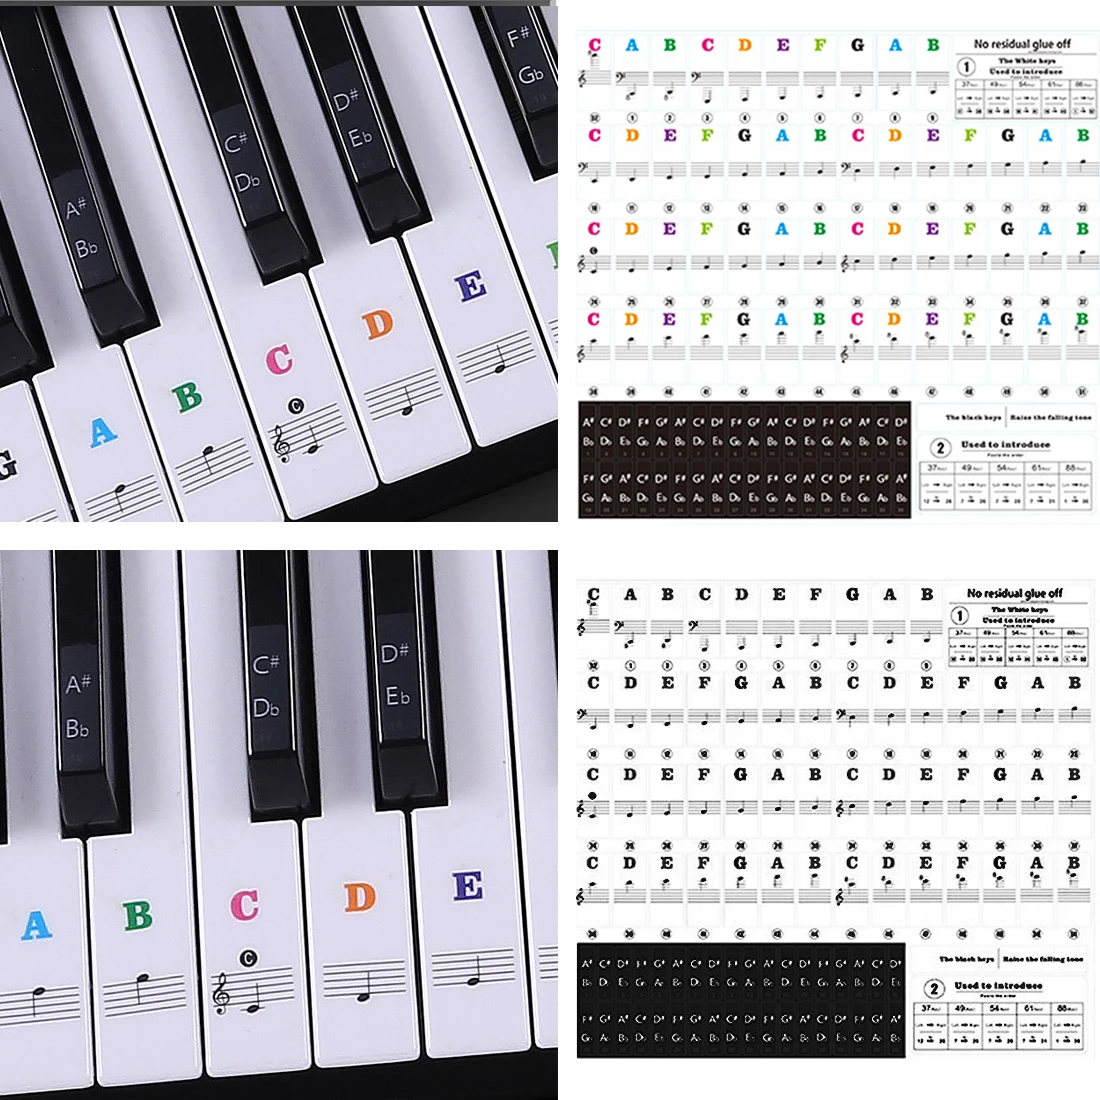 Pro прозрачная, в форме рояля наклейка на клавиатуру 88/61/54/49 клавиша электронная клавиатура клавиша пианино Stave Note наклейка для белых клавиш